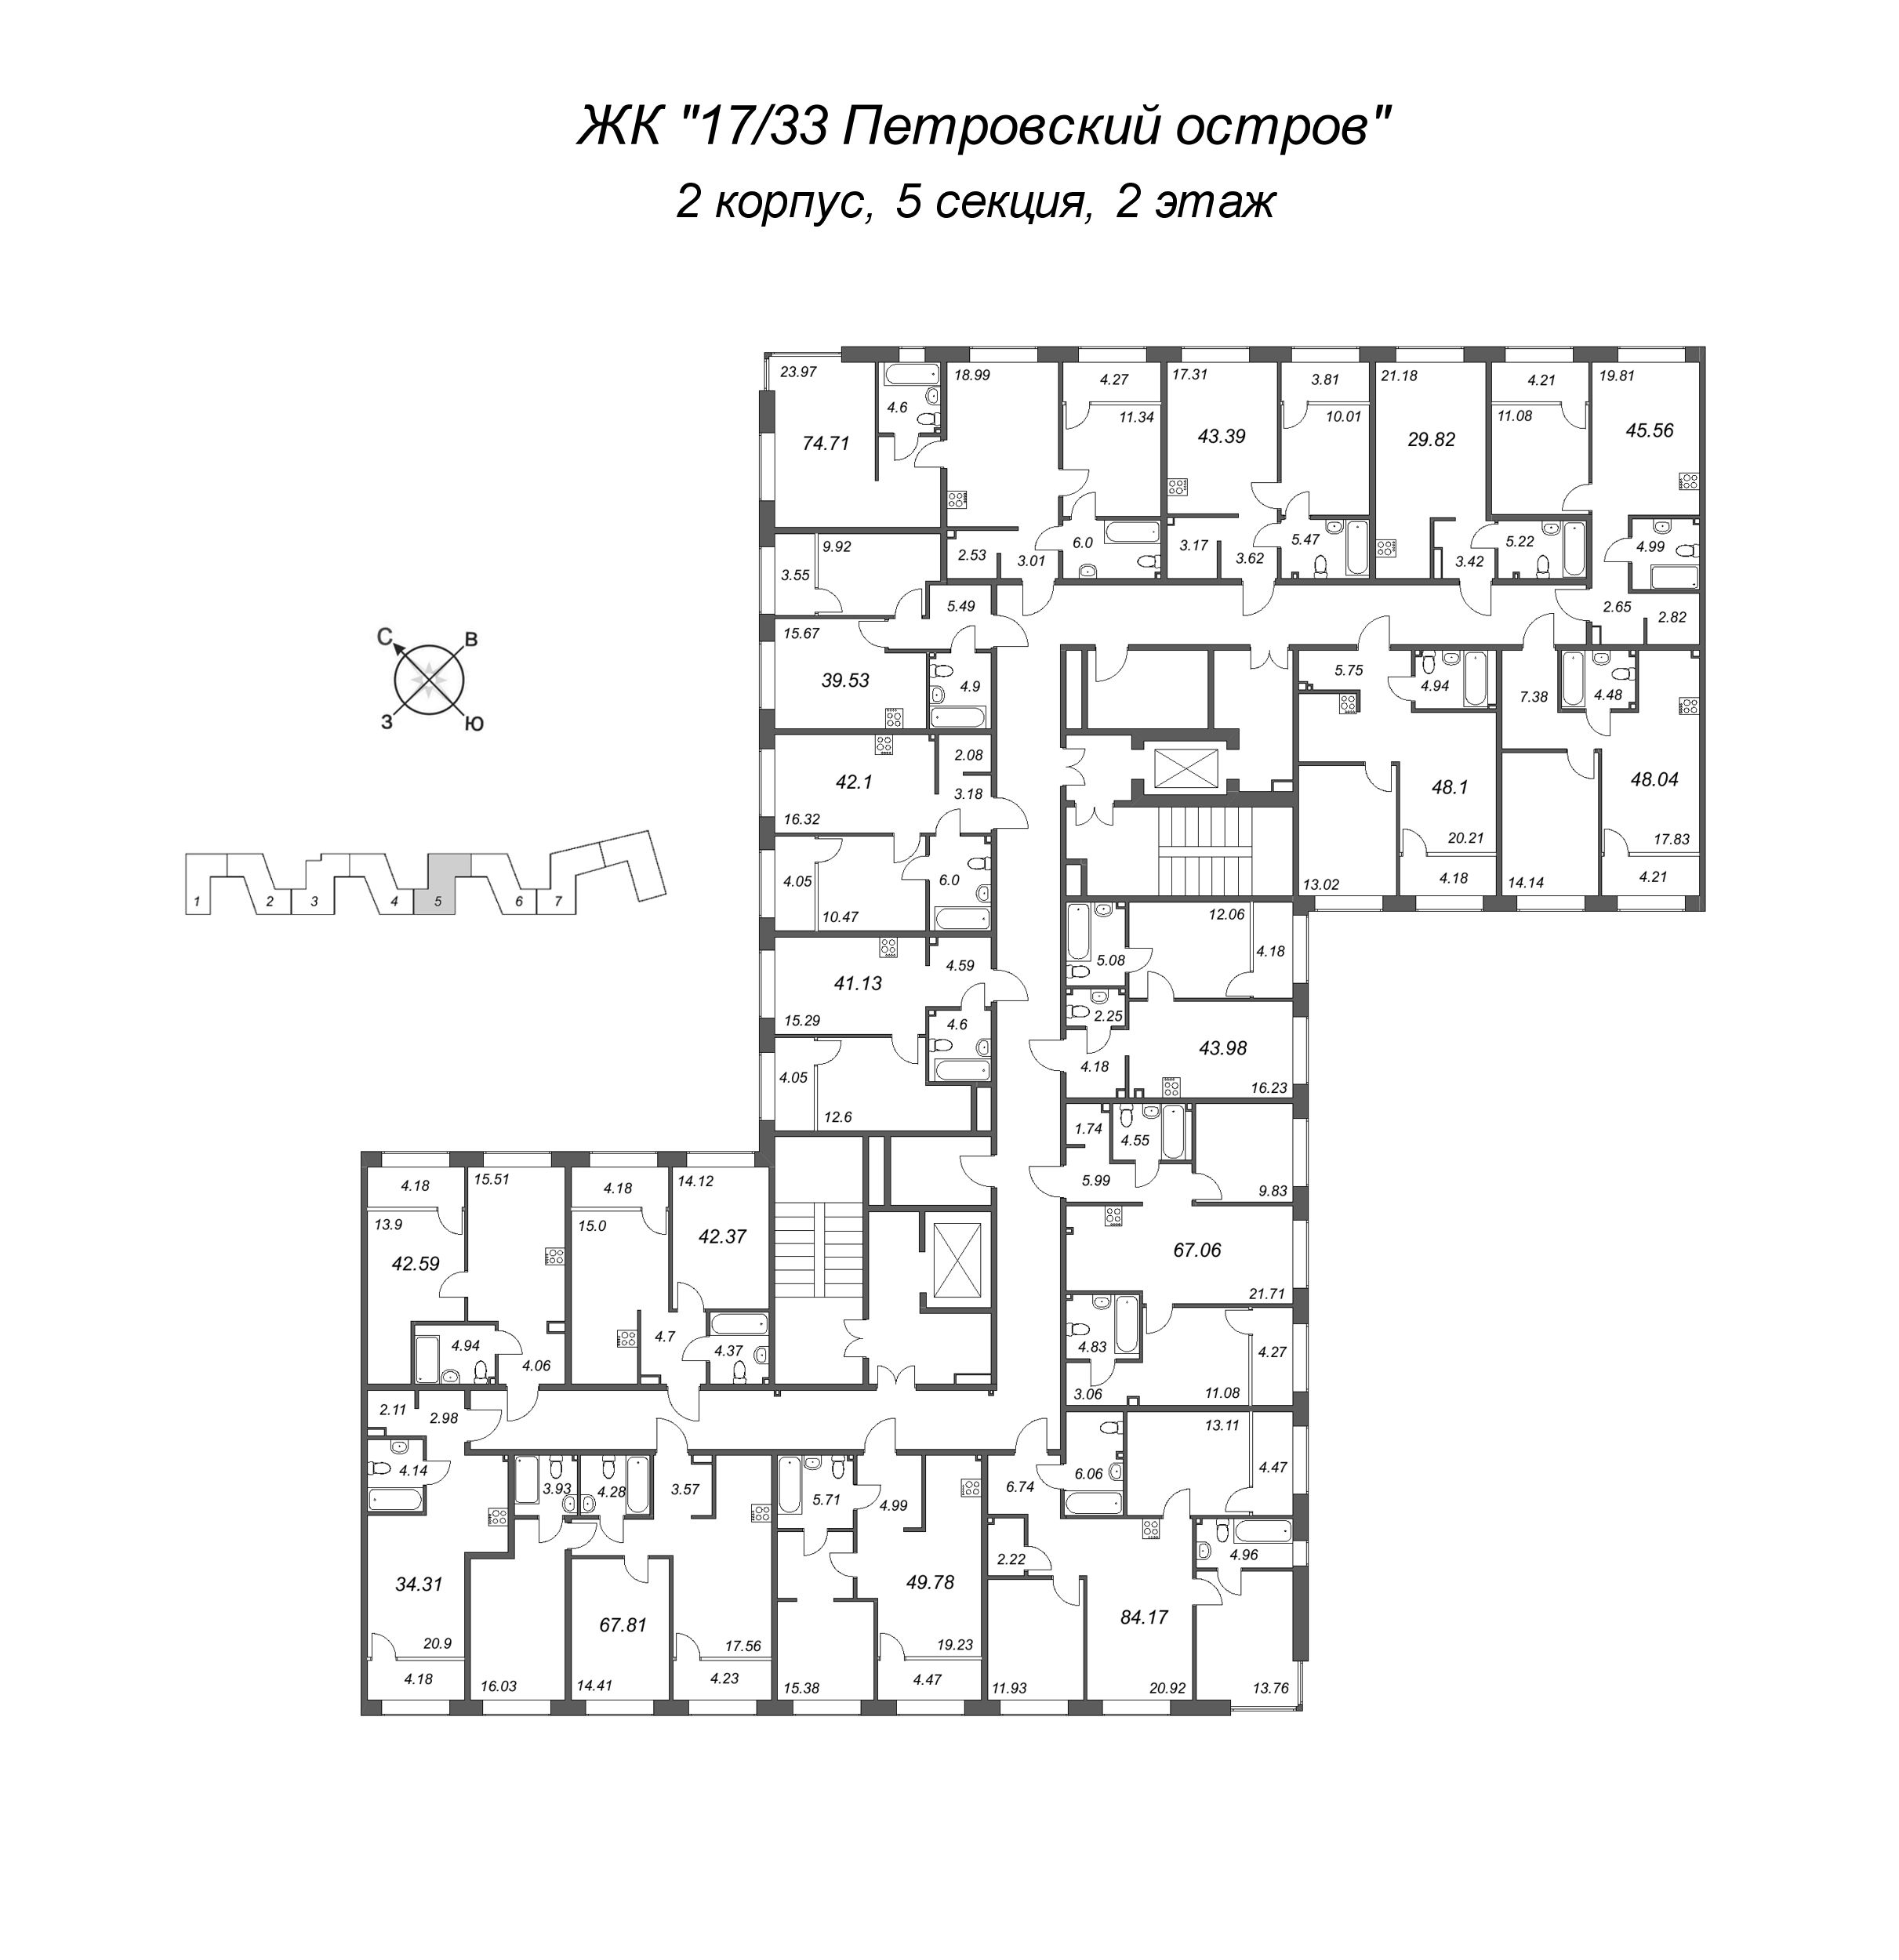 2-комнатная (Евро) квартира, 41.13 м² в ЖК "17/33 Петровский остров" - планировка этажа